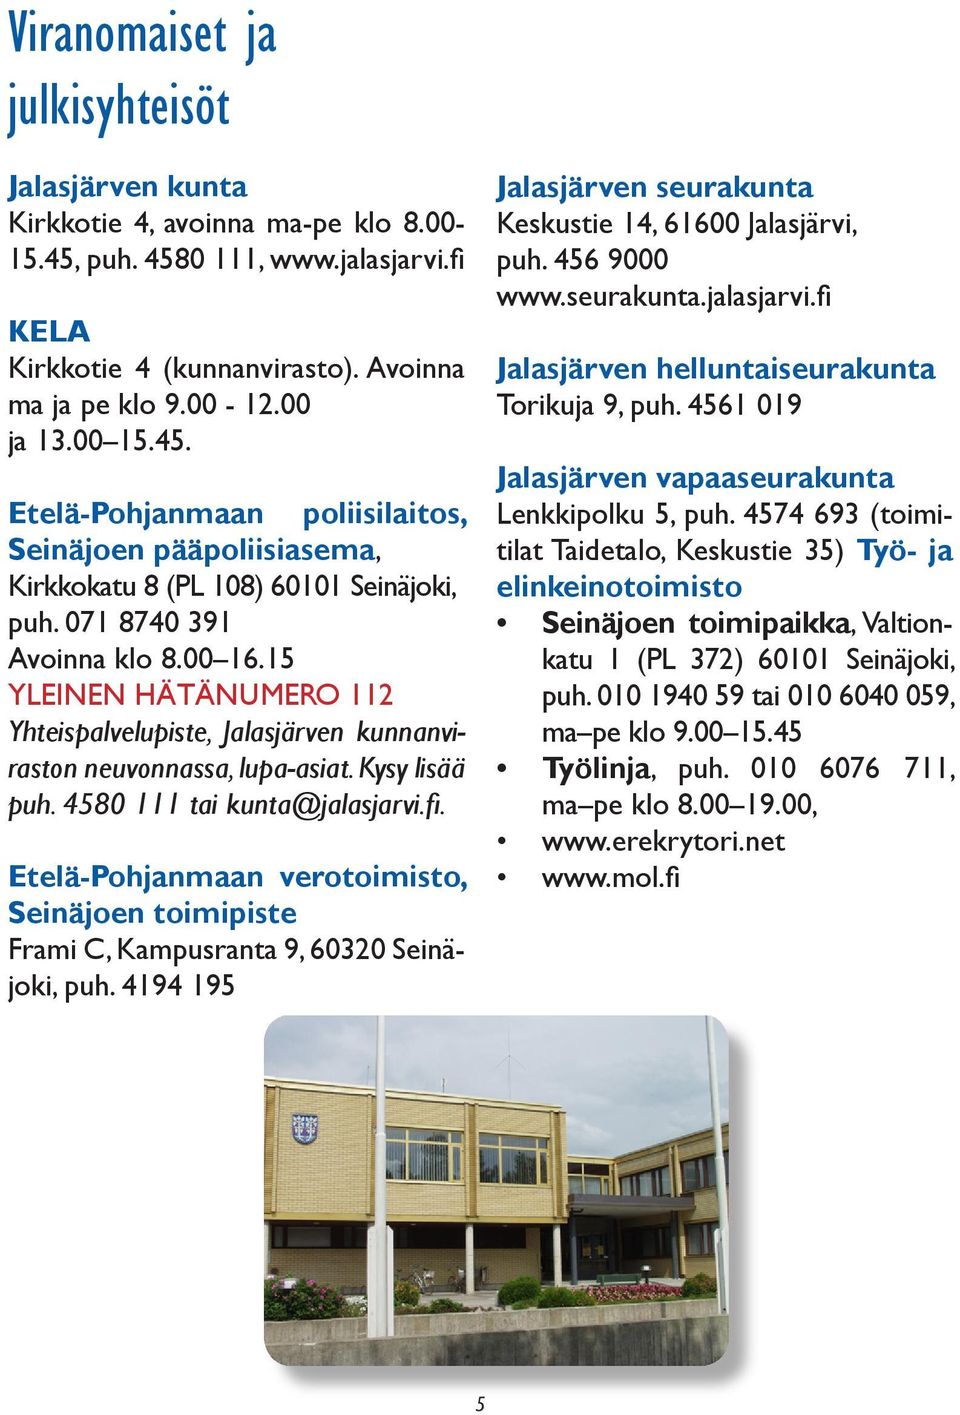 15 YLEINEN HÄTÄNUMERO 112 Yhteispalvelupiste, Jalasjärven kunnanviraston neuvonnassa, lupa-asiat. Kysy lisää puh. 4580 111 tai kunta@jalasjarvi.fi.